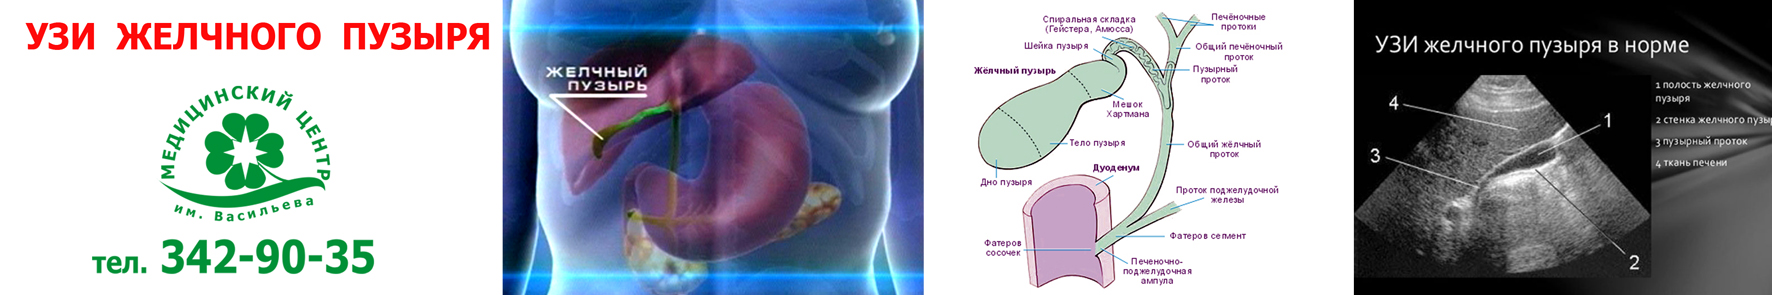 Желчный пузырь строение анатомия УЗИ